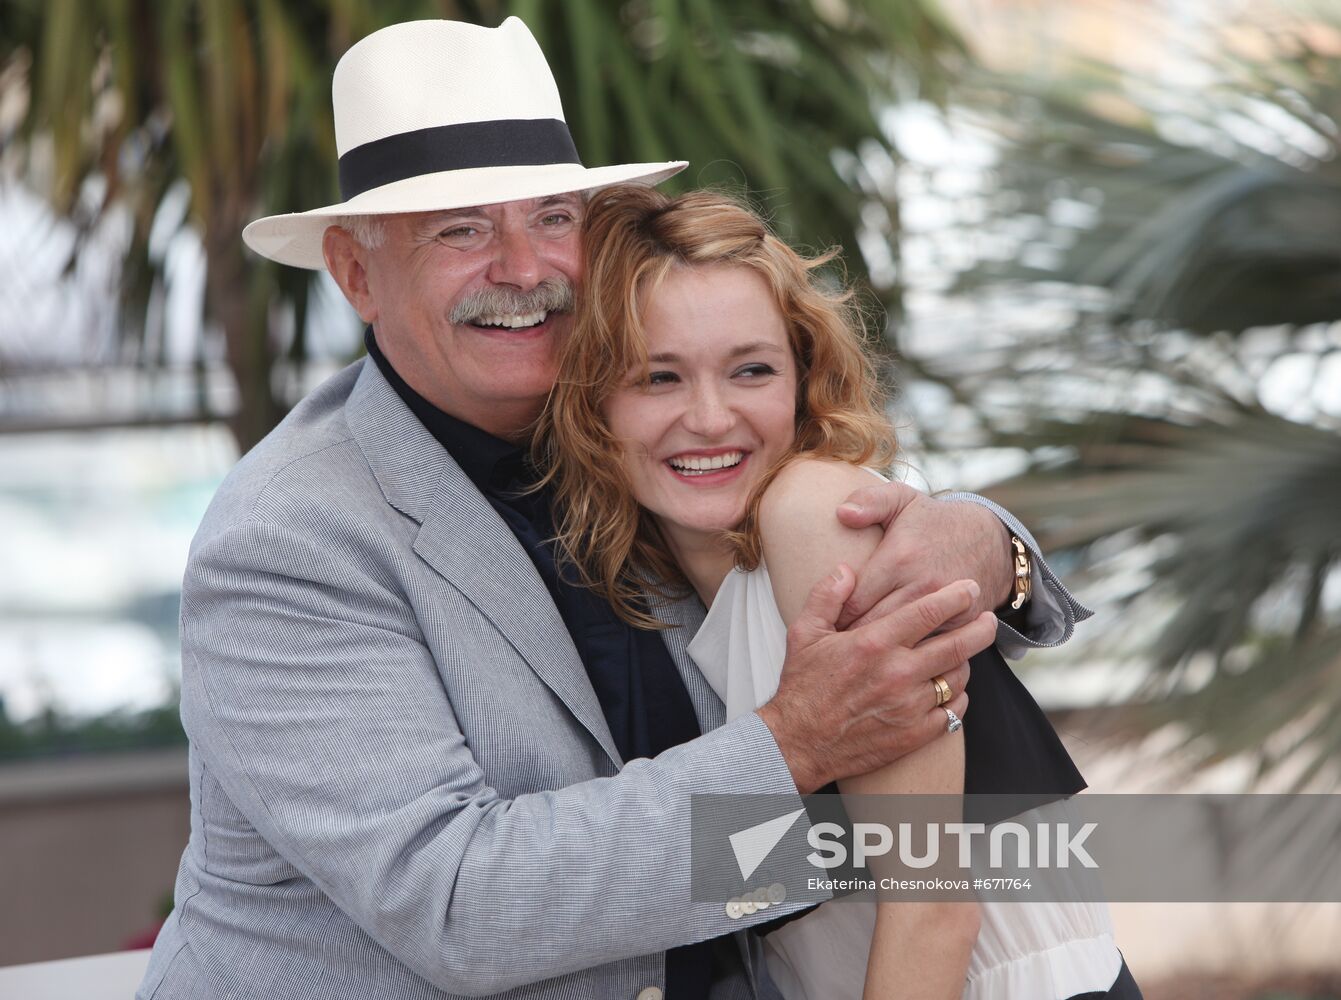 Nikita Mikhalkov with his daughter and actress Nadezhda